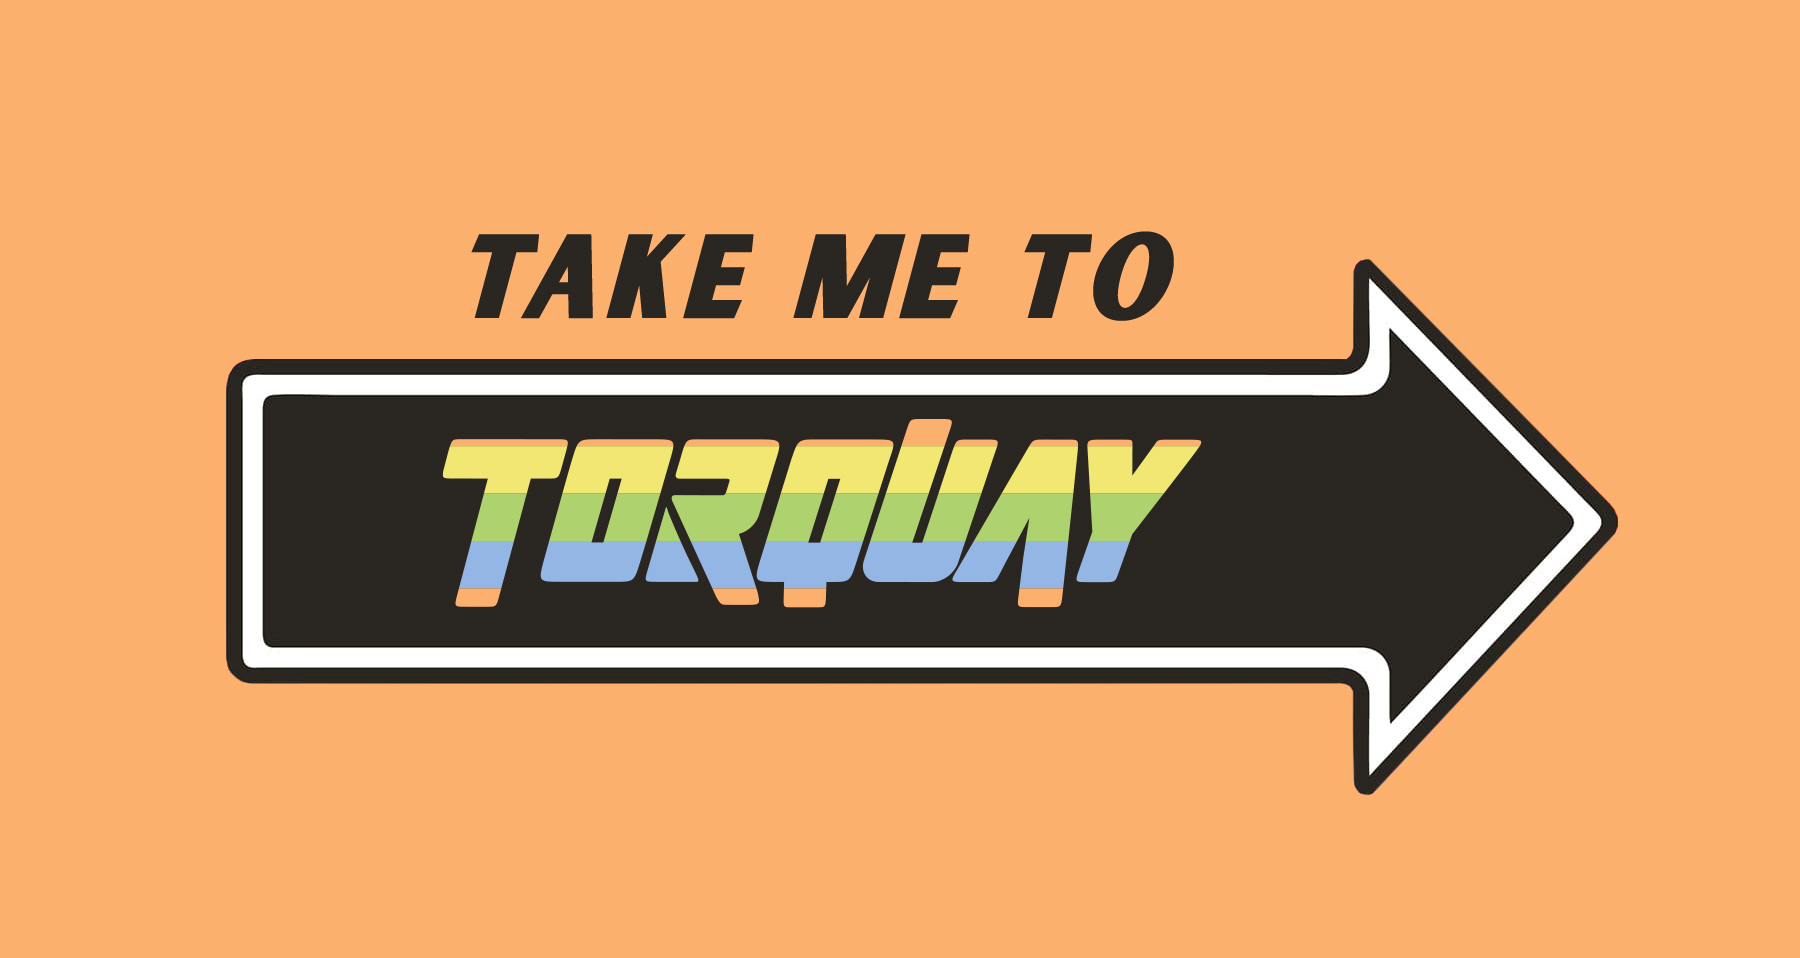 Take me to Torquay